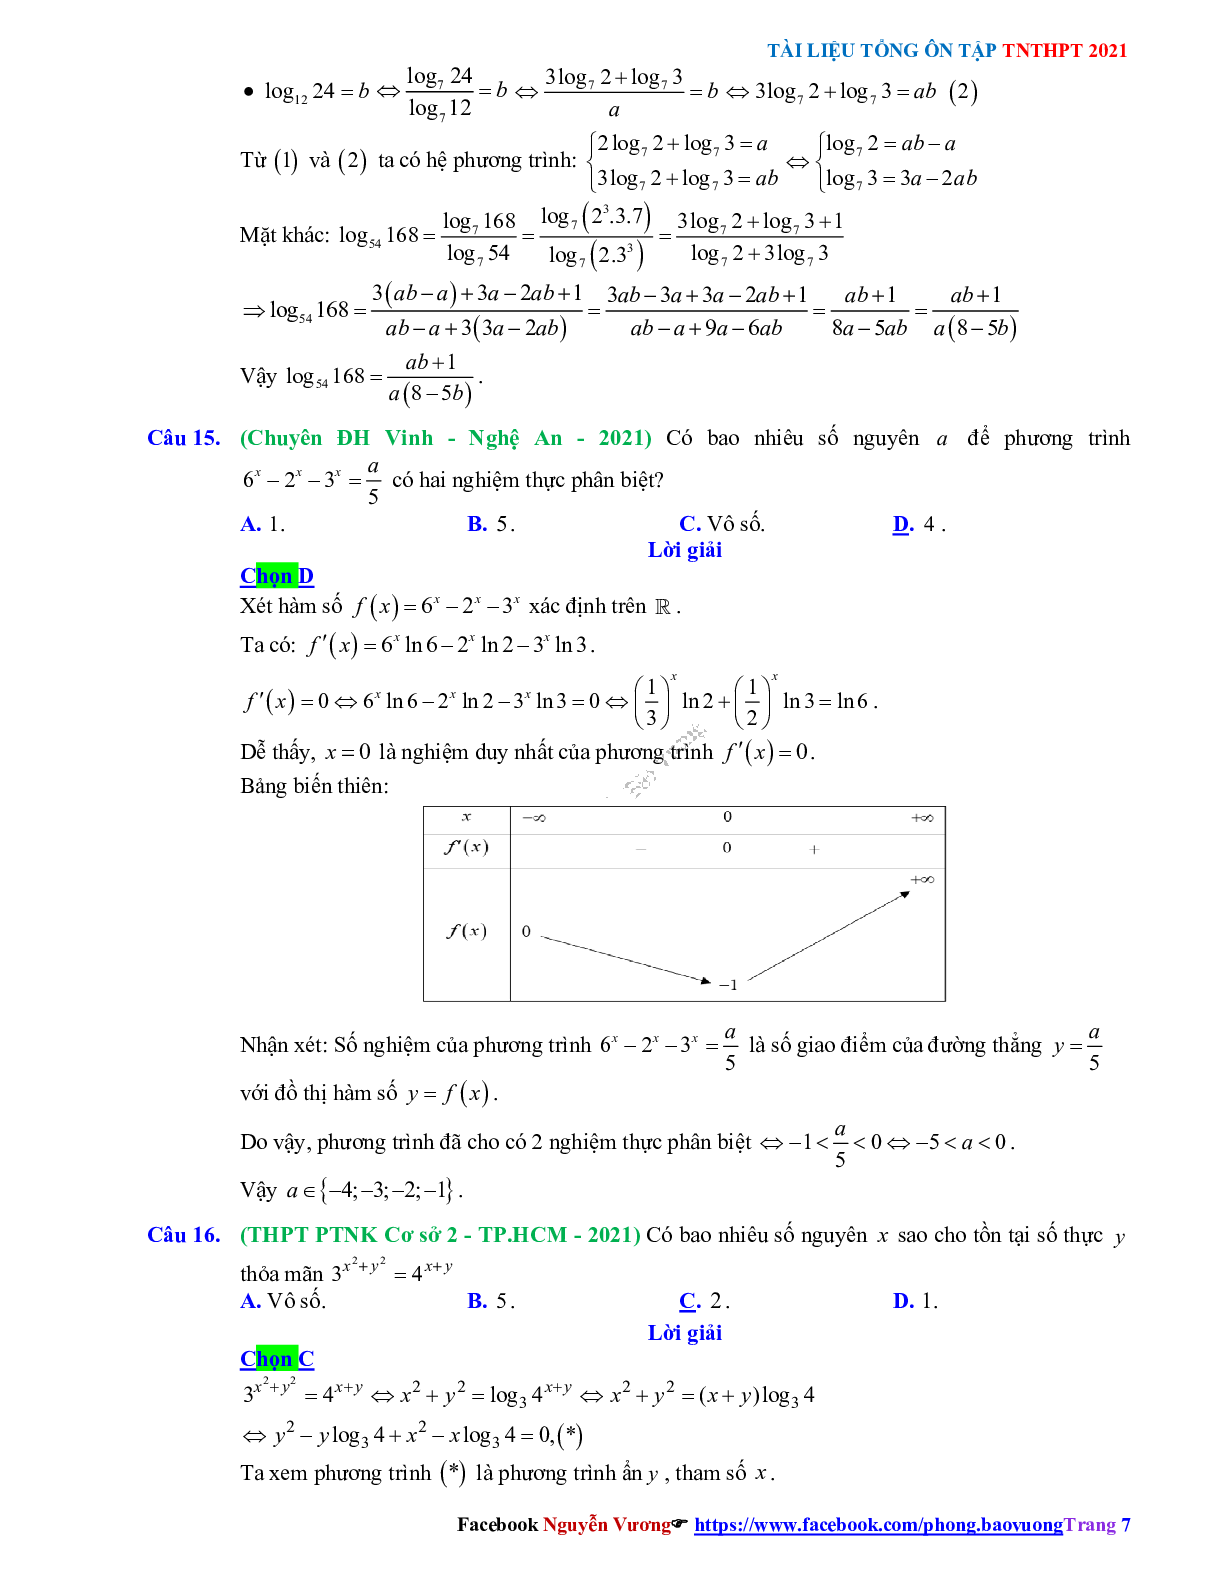 Trắc nghiệm Ôn thi THPT QG Toán 12: Đáp án mũ - lũy thừa - logarit mức độ vận dụng (trang 7)